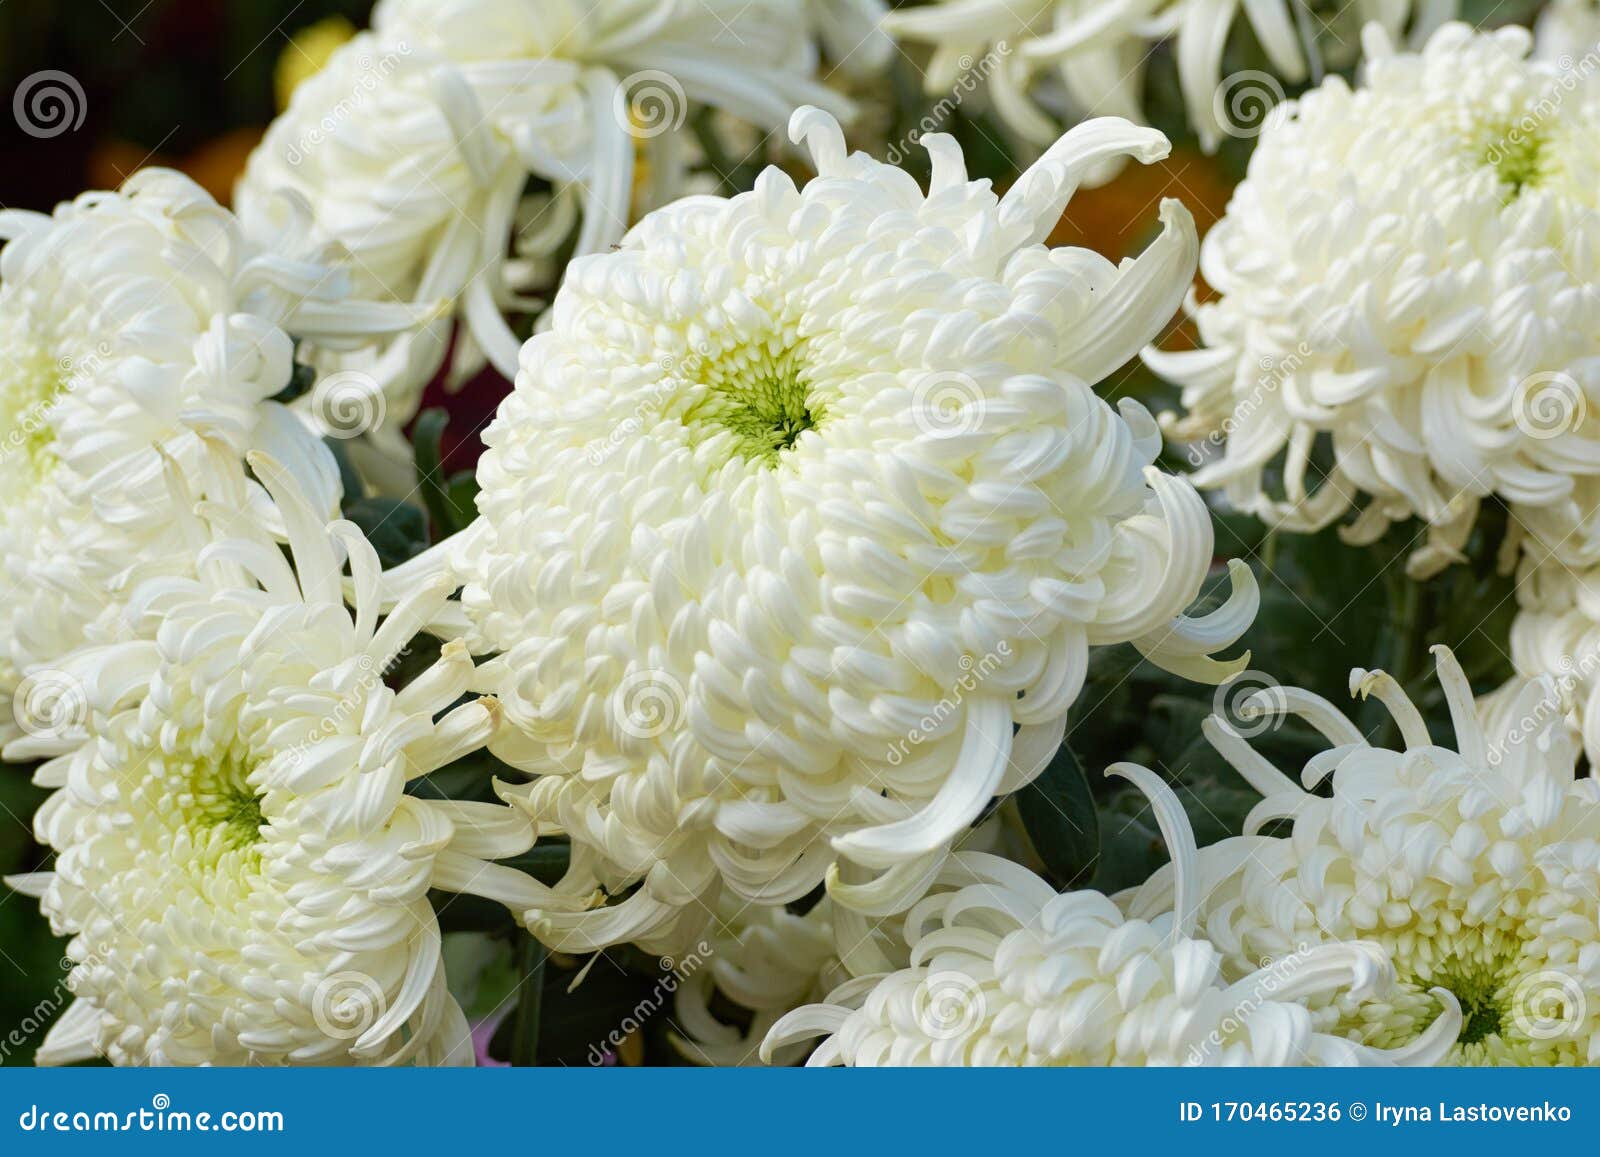 野菊花维也纳白色白菊花秋花装饰组合物库存照片 图片包括有绿色 颜色 罗马尼亚 构成 花束